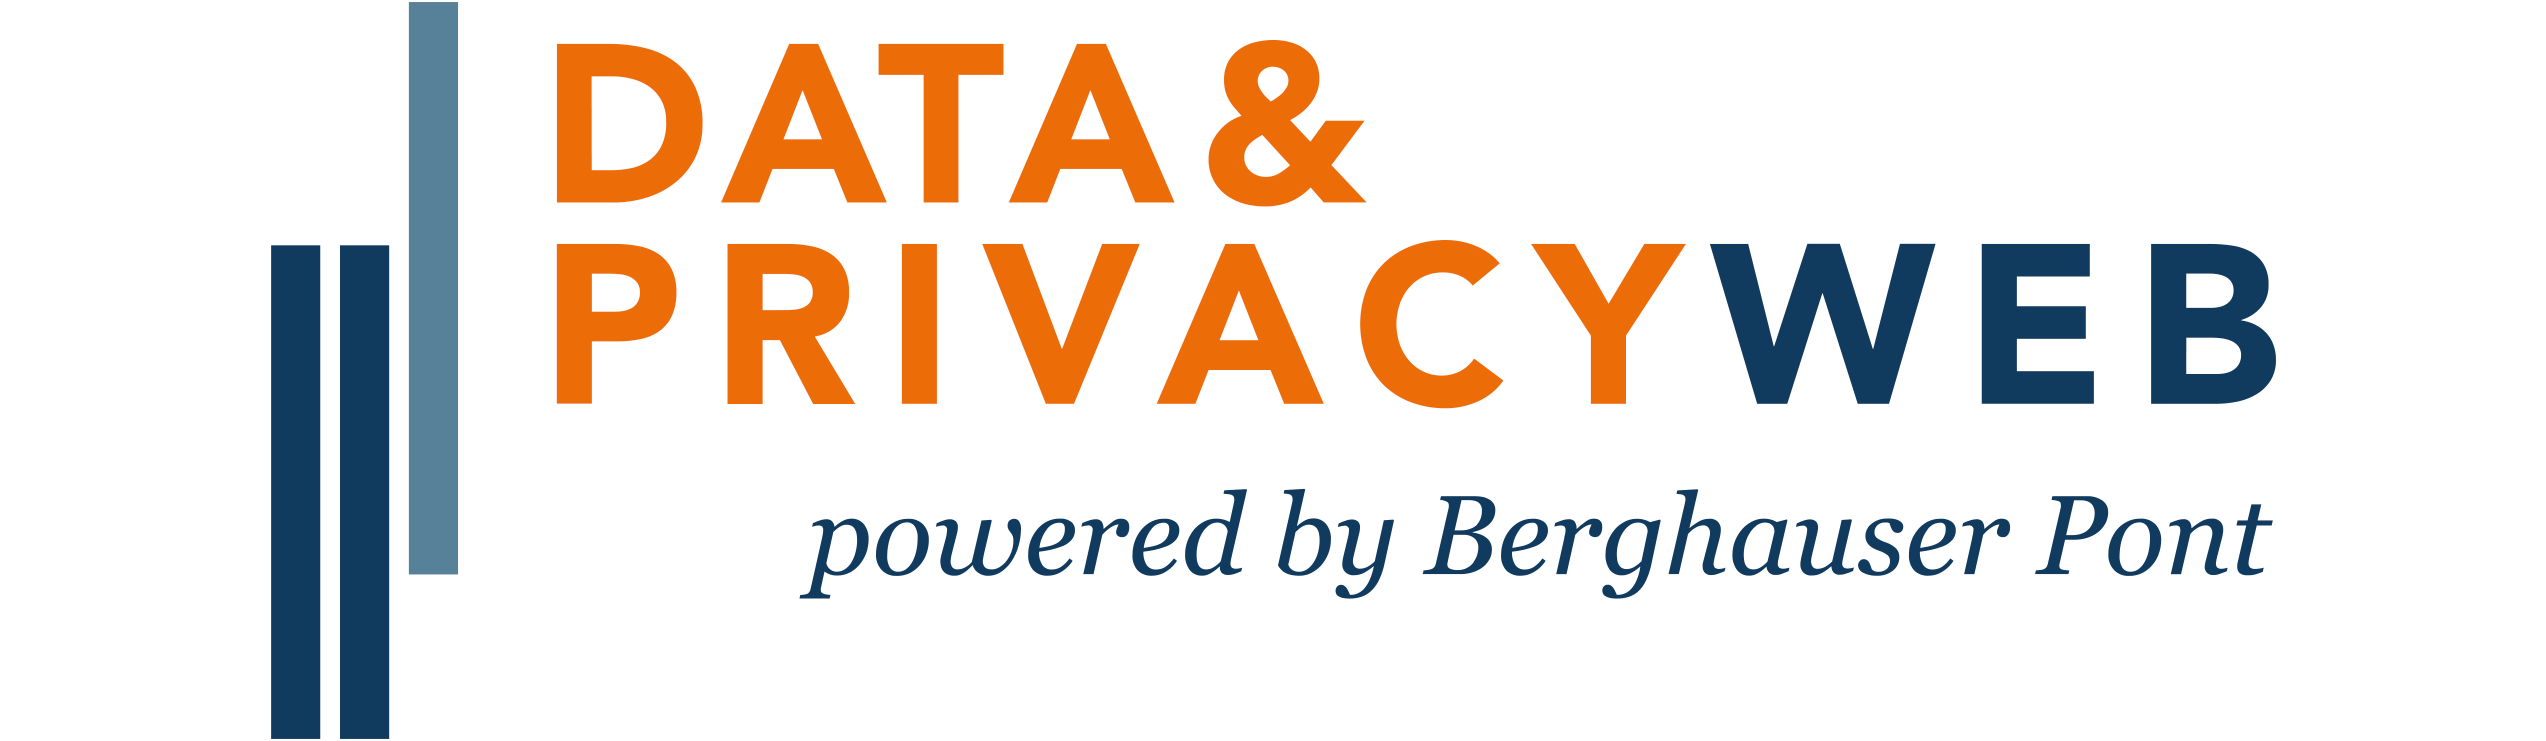 Data&Privacyweb